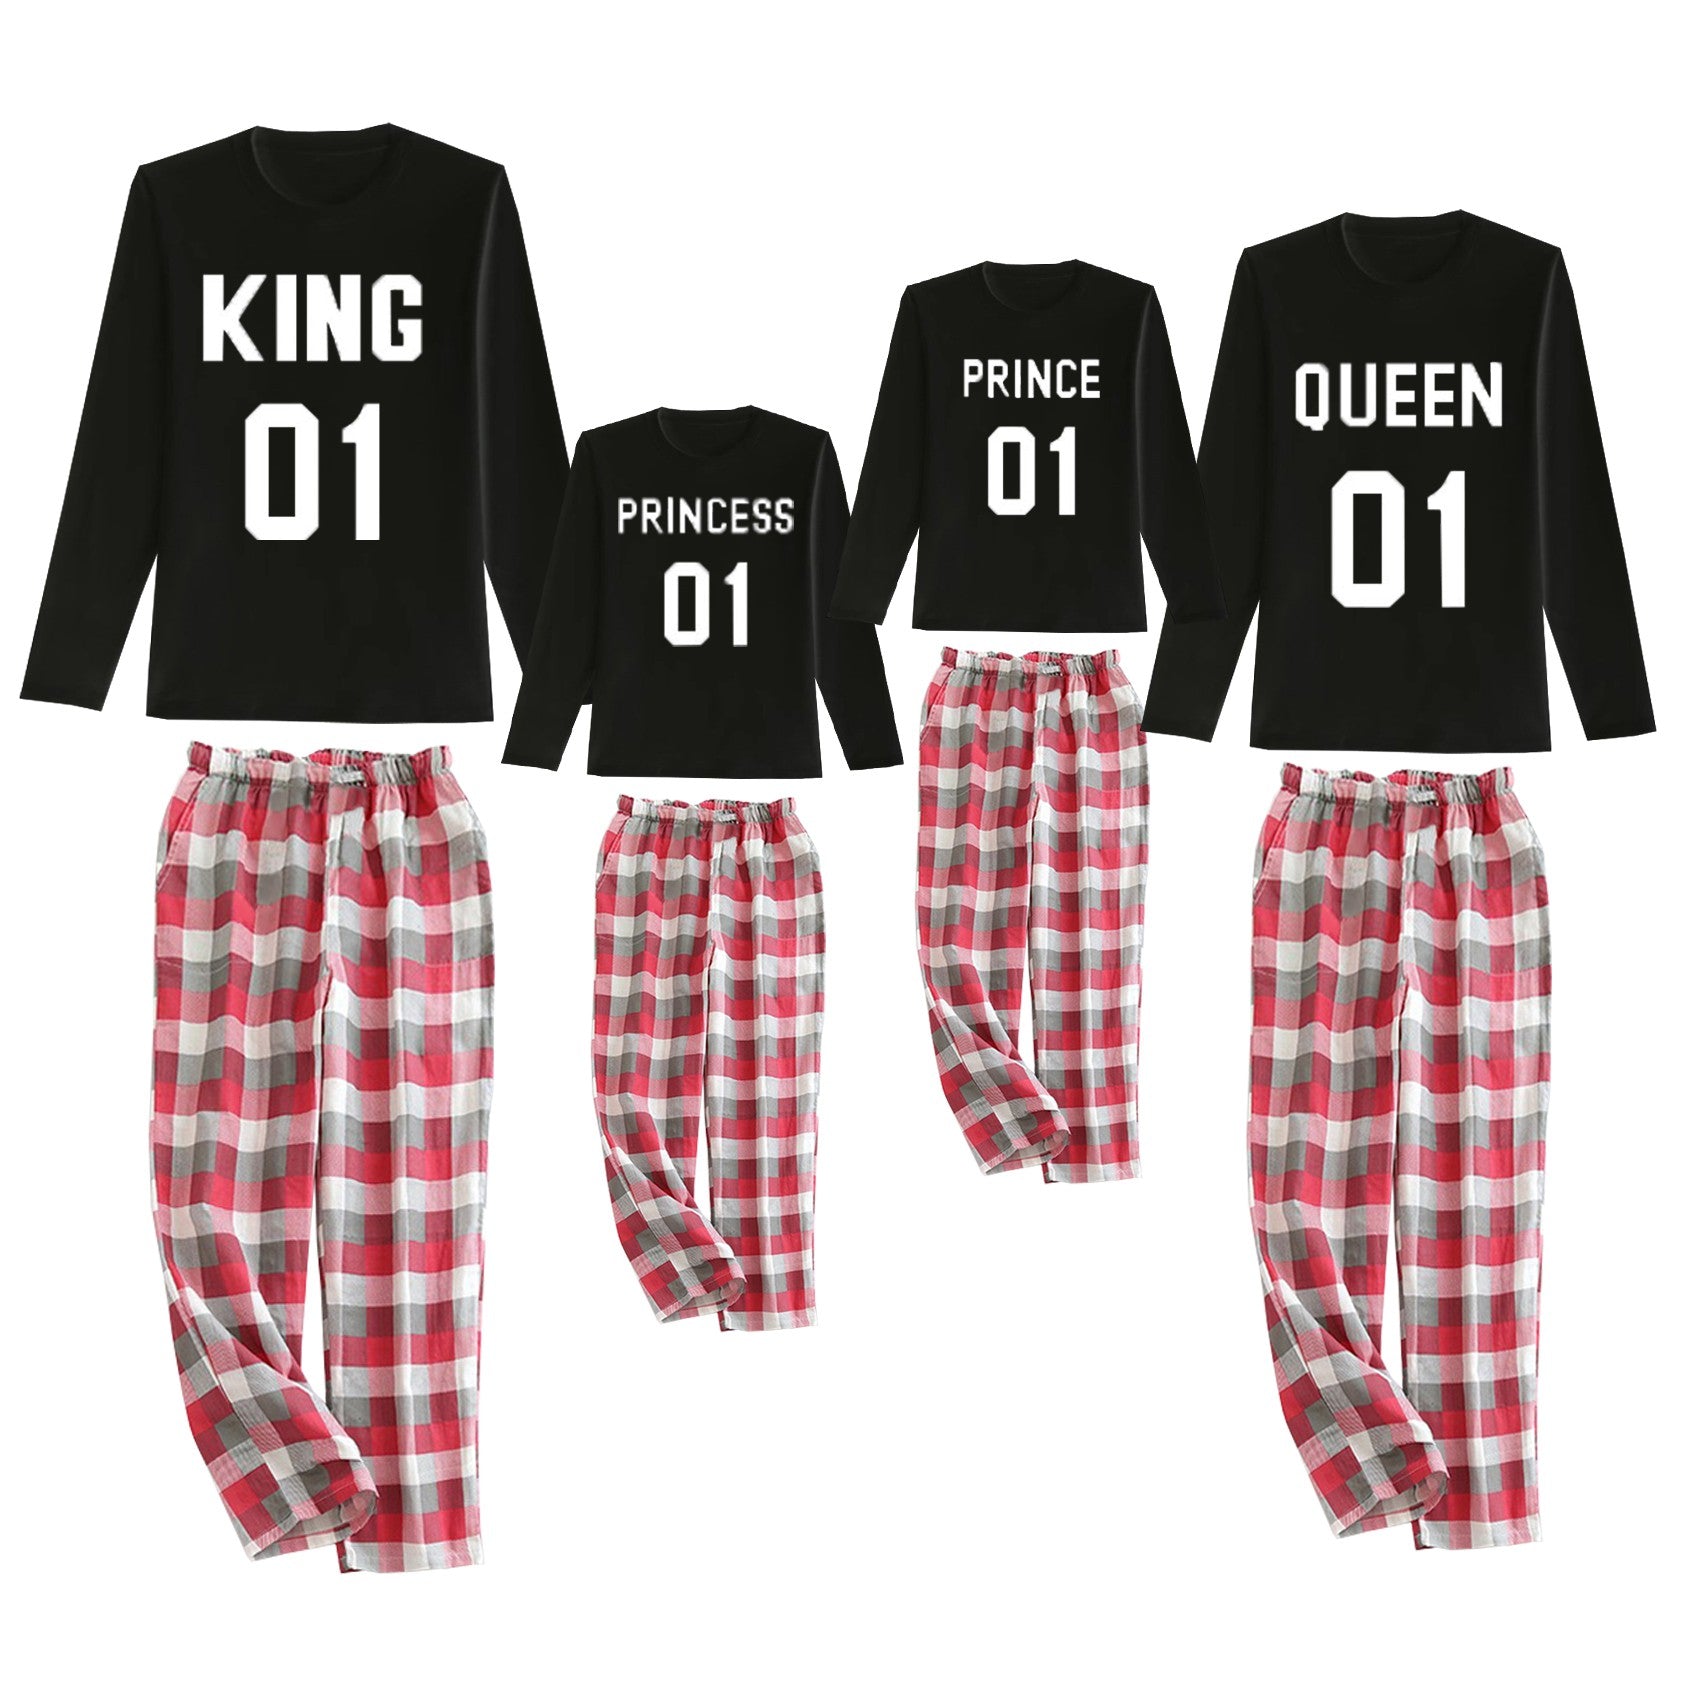 Pijama King-Queen-Prince-Princess camiseta negra y pantalón rojo letras blancas